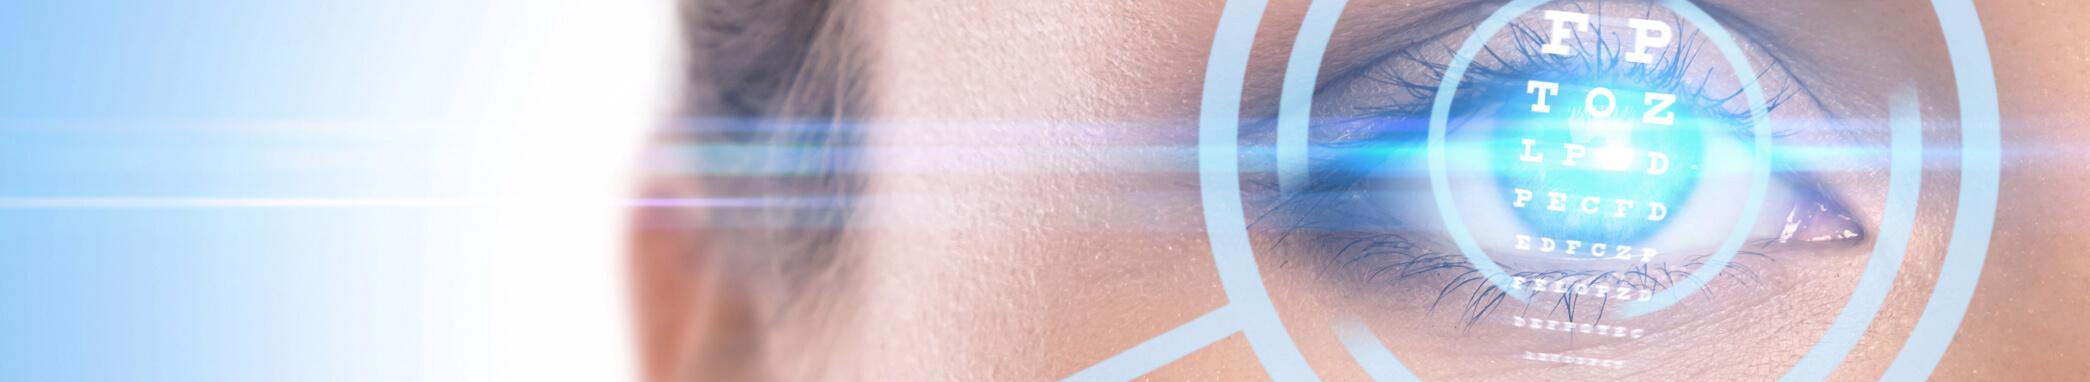 Weiss Klinik - Laserowa korekcja wad wzroku